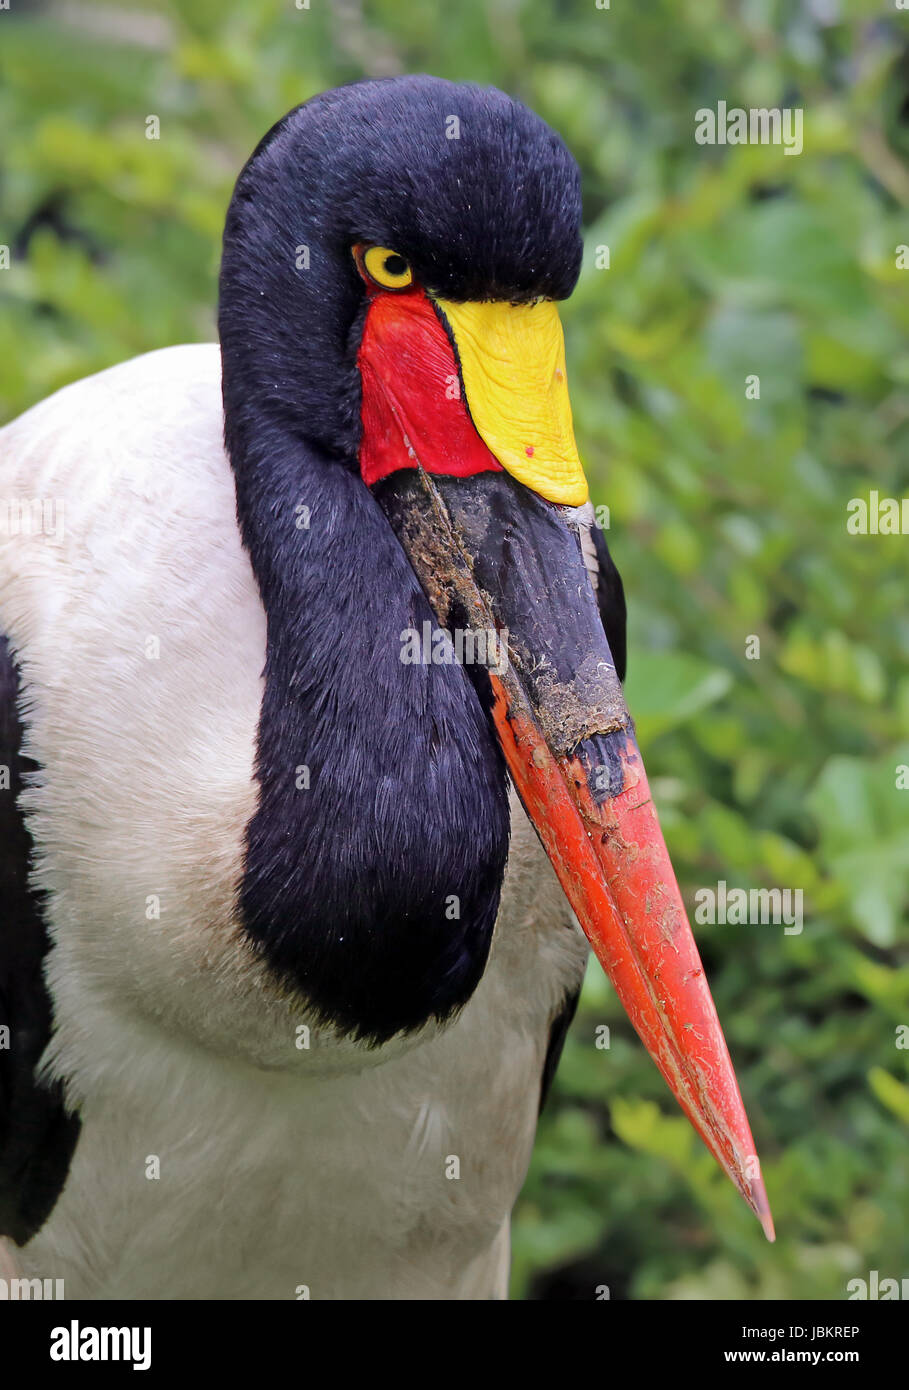 saddle stork in portrait Stock Photo